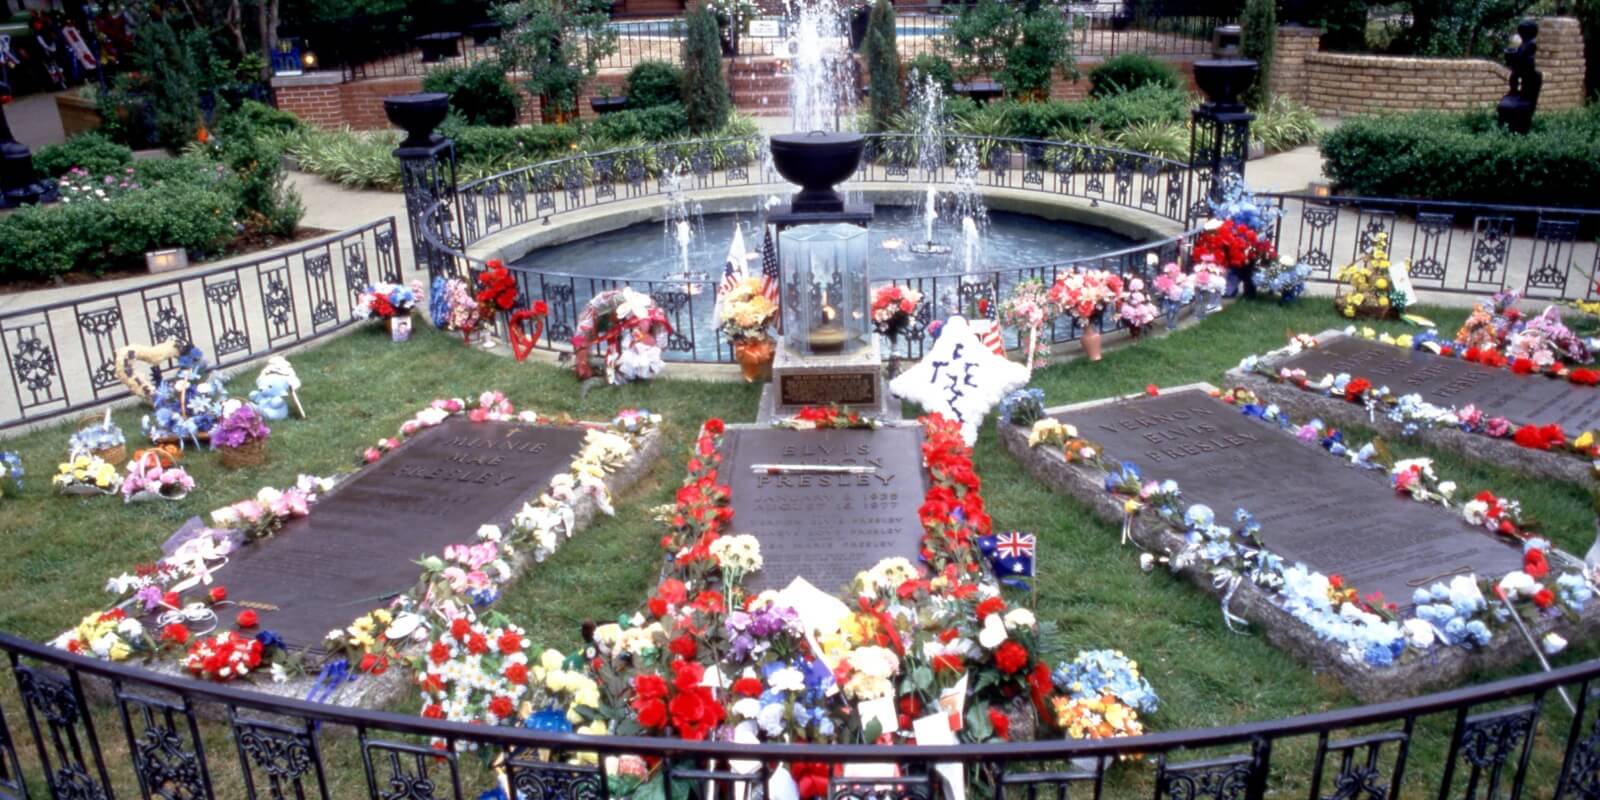 Graceland's Meditation Garden in a photo taken in 1987.